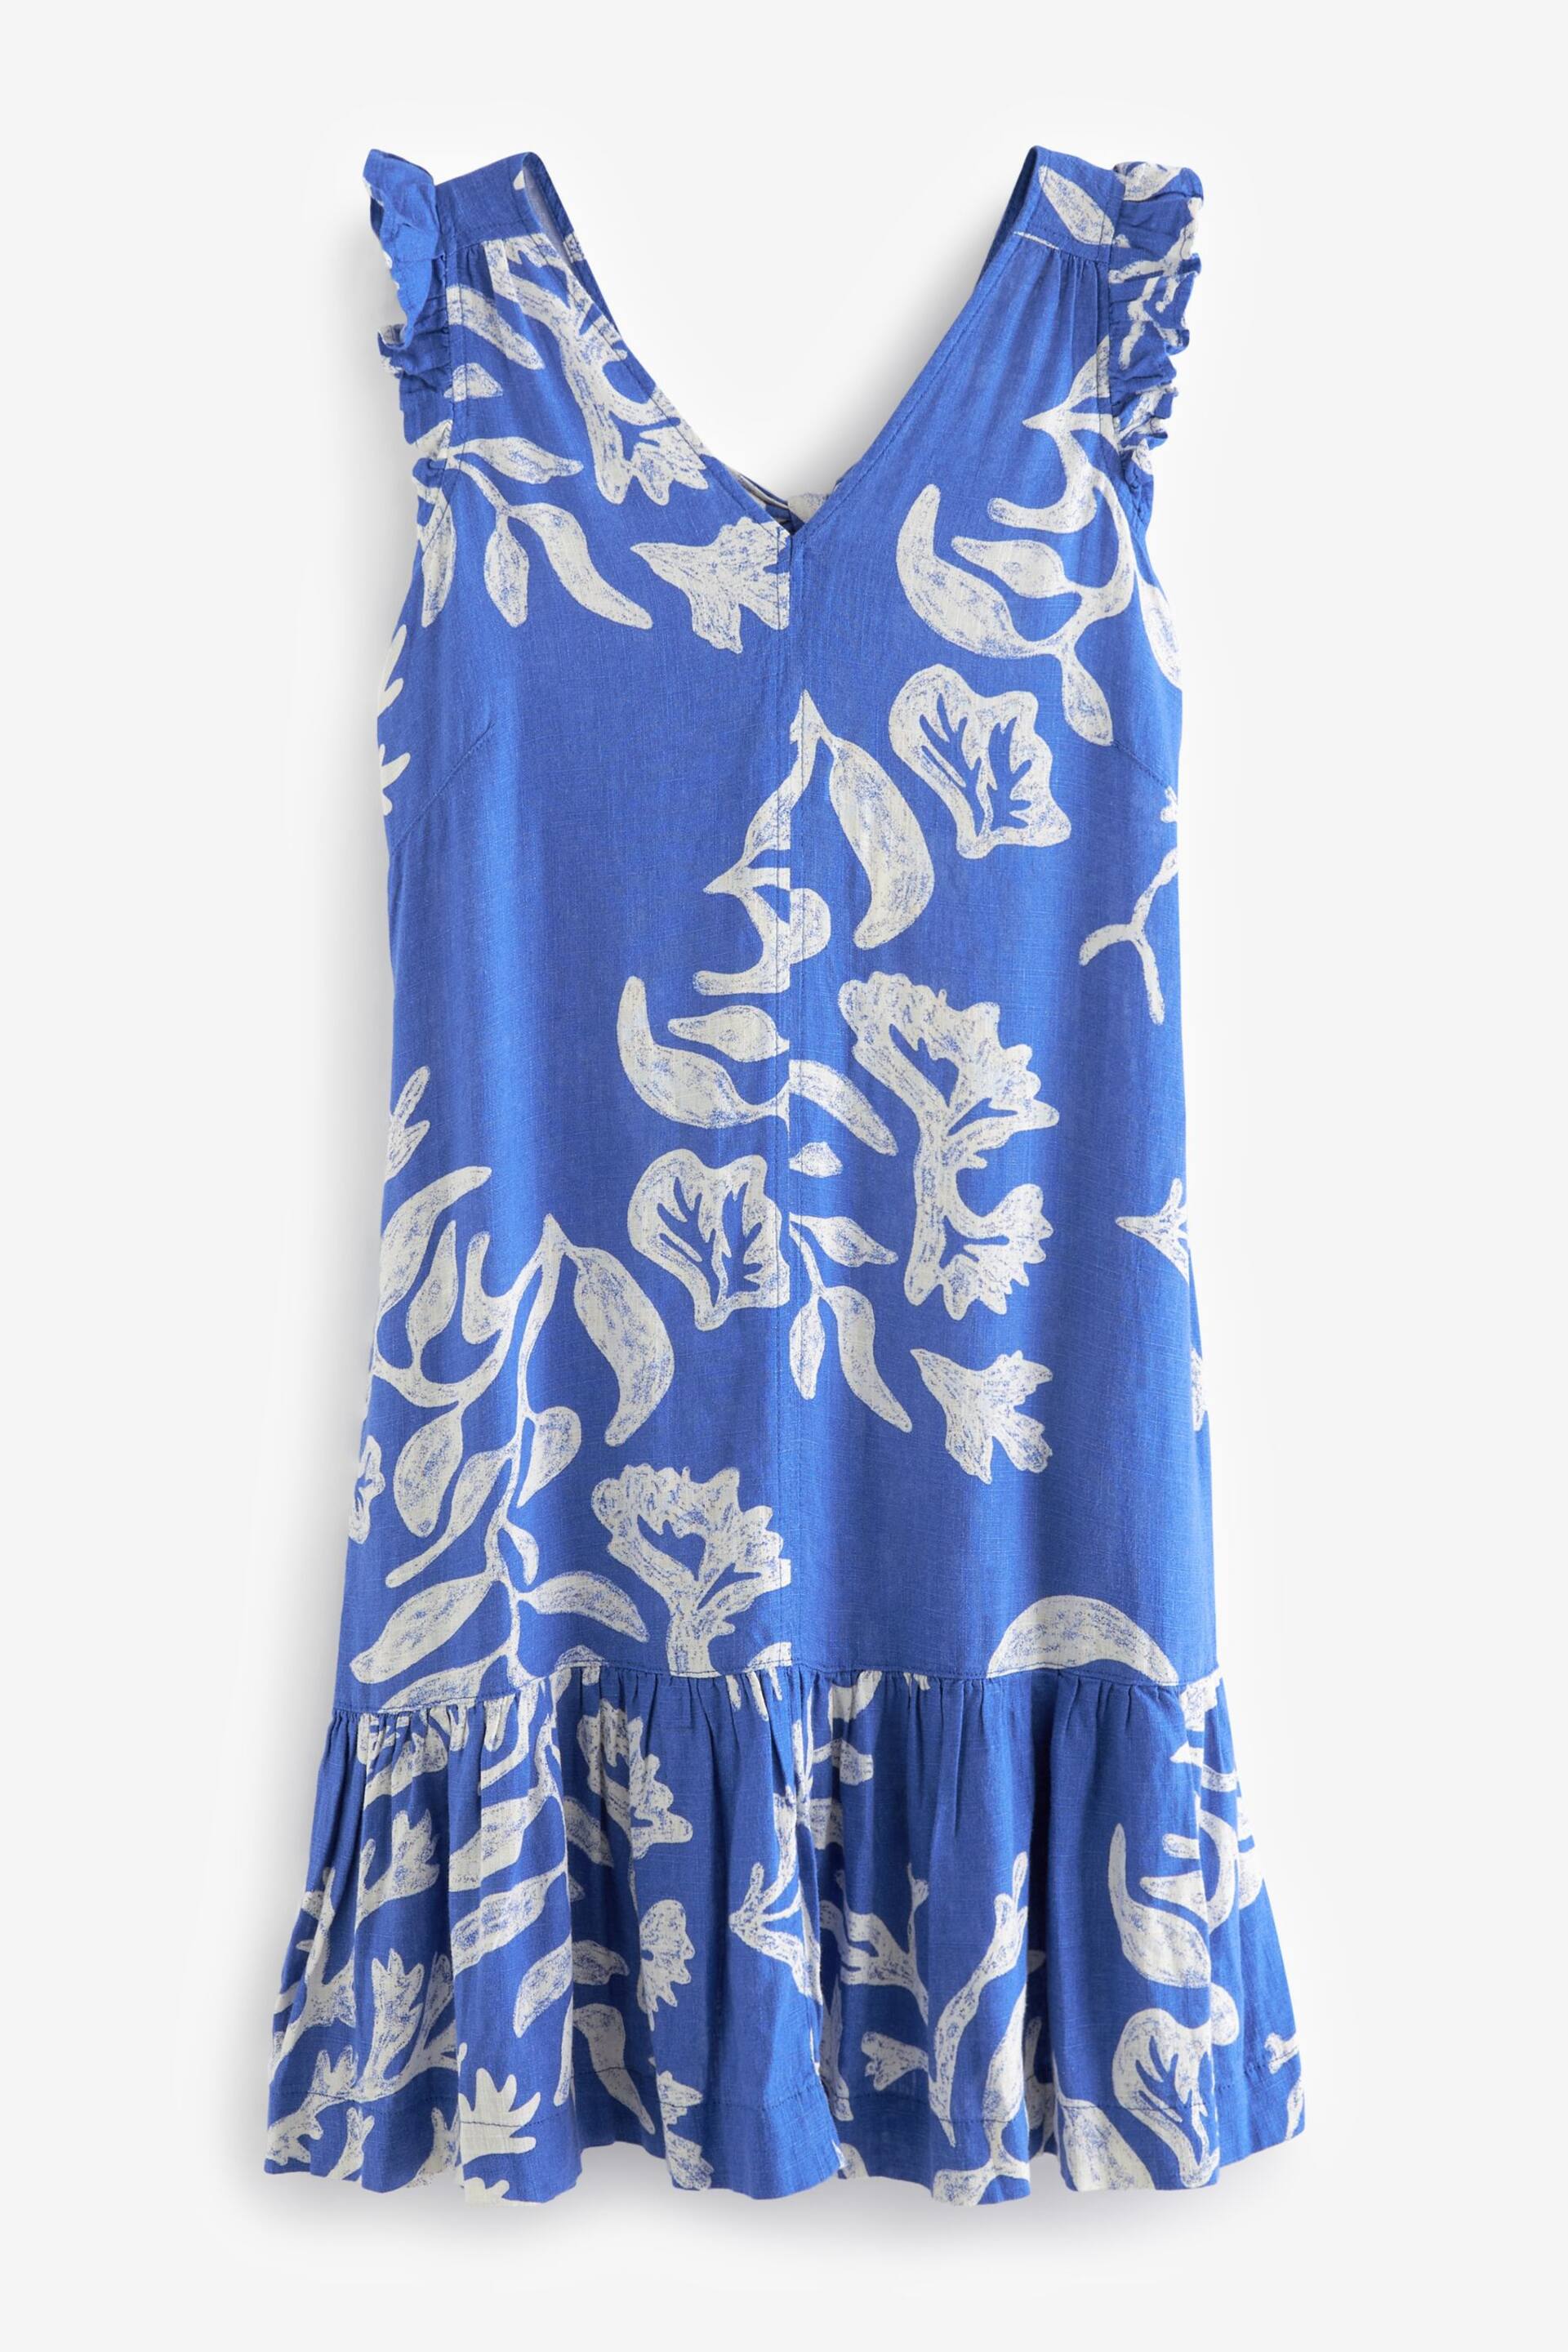 Blue on White Linen V-Neck Blend Summer Sleeveless Shift Dress - Image 5 of 6